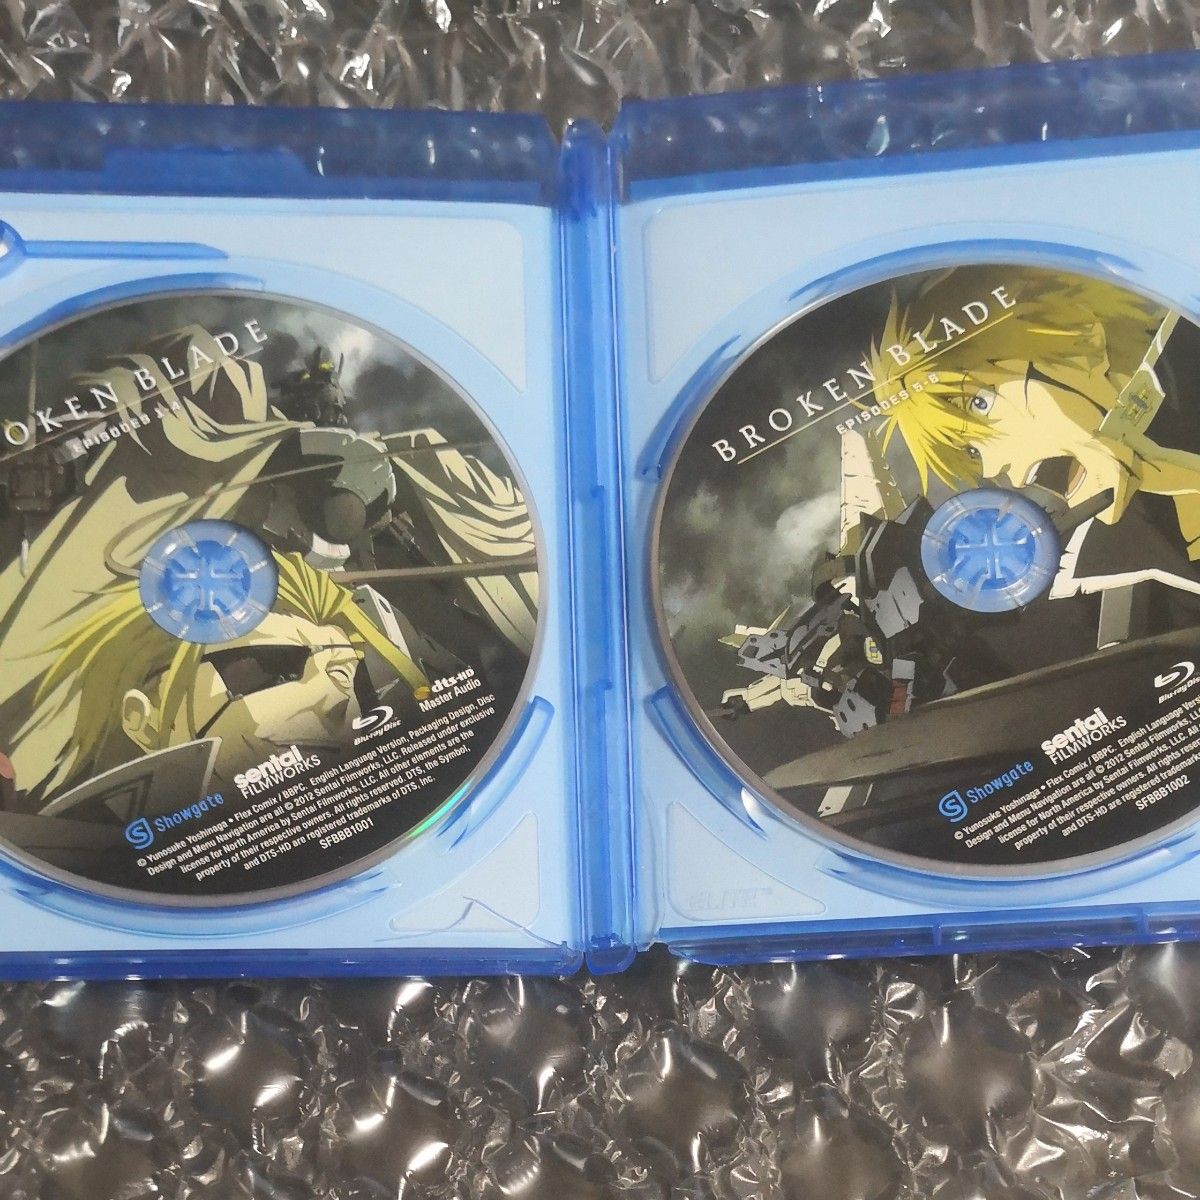 ブレイクブレイド Blu-ray complete film series 北米版 BROKEN BLADE 全6話